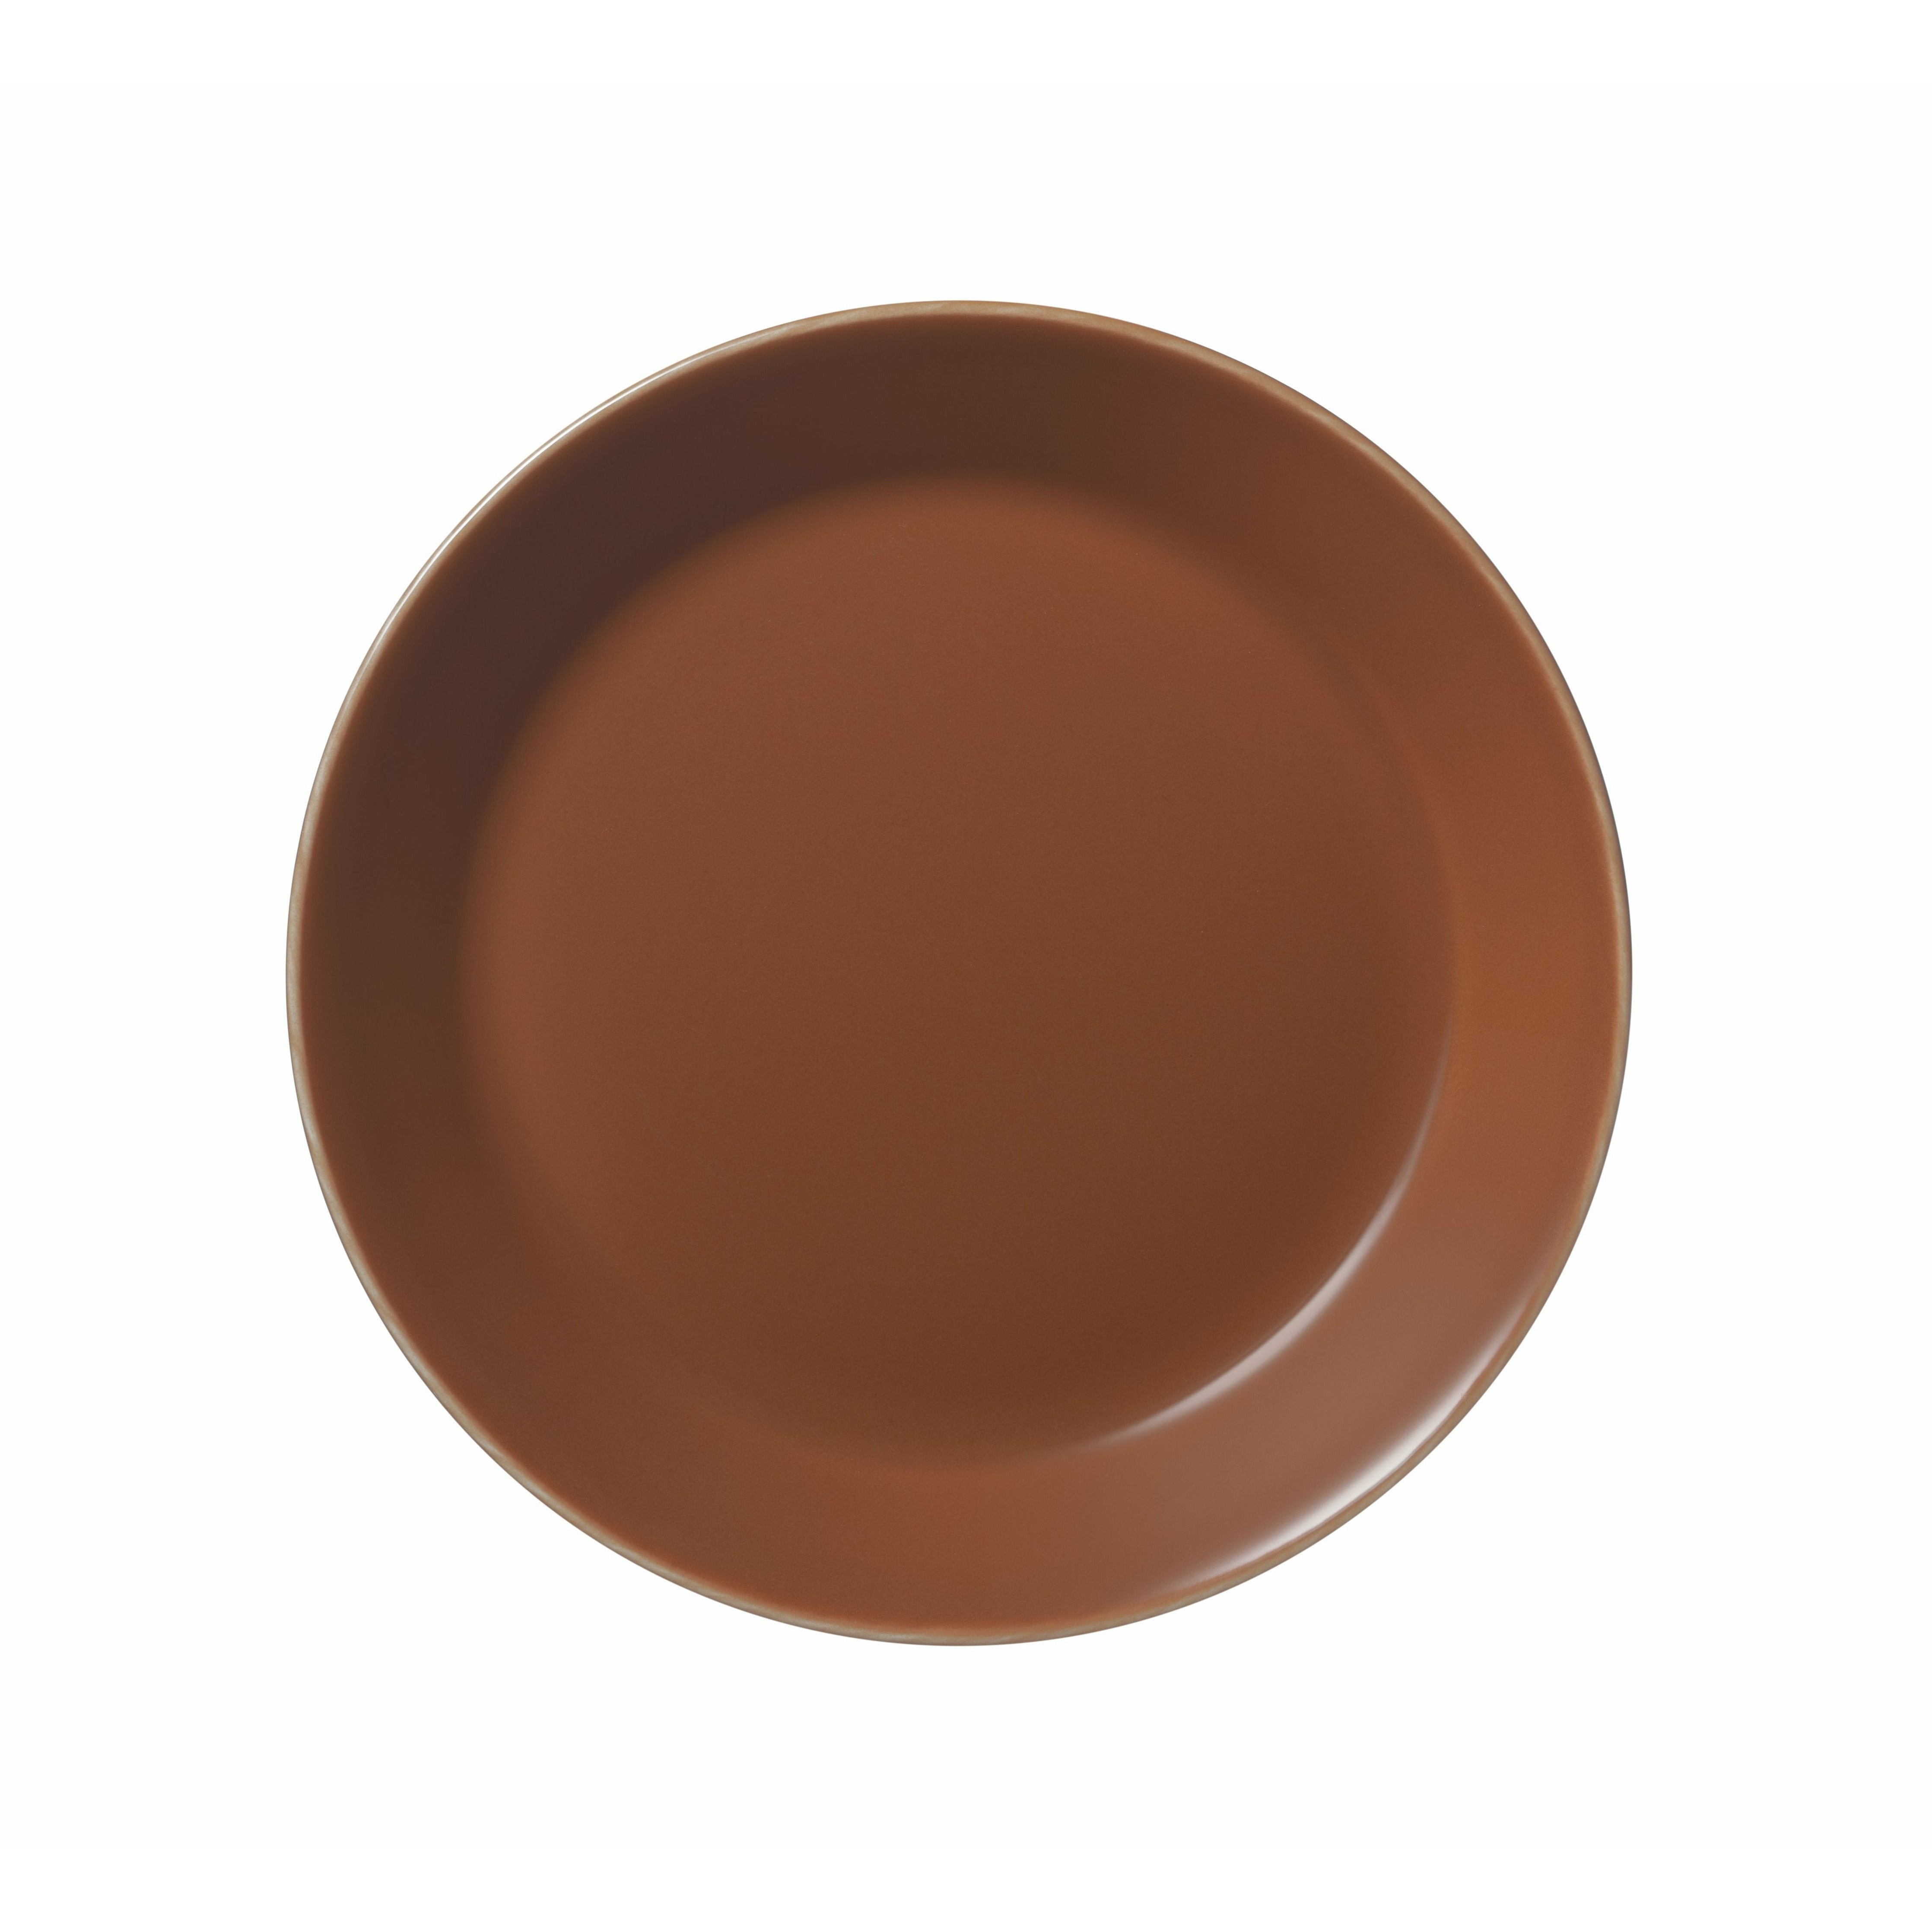 Iittala Teema Plate 17cm, vintage marrón